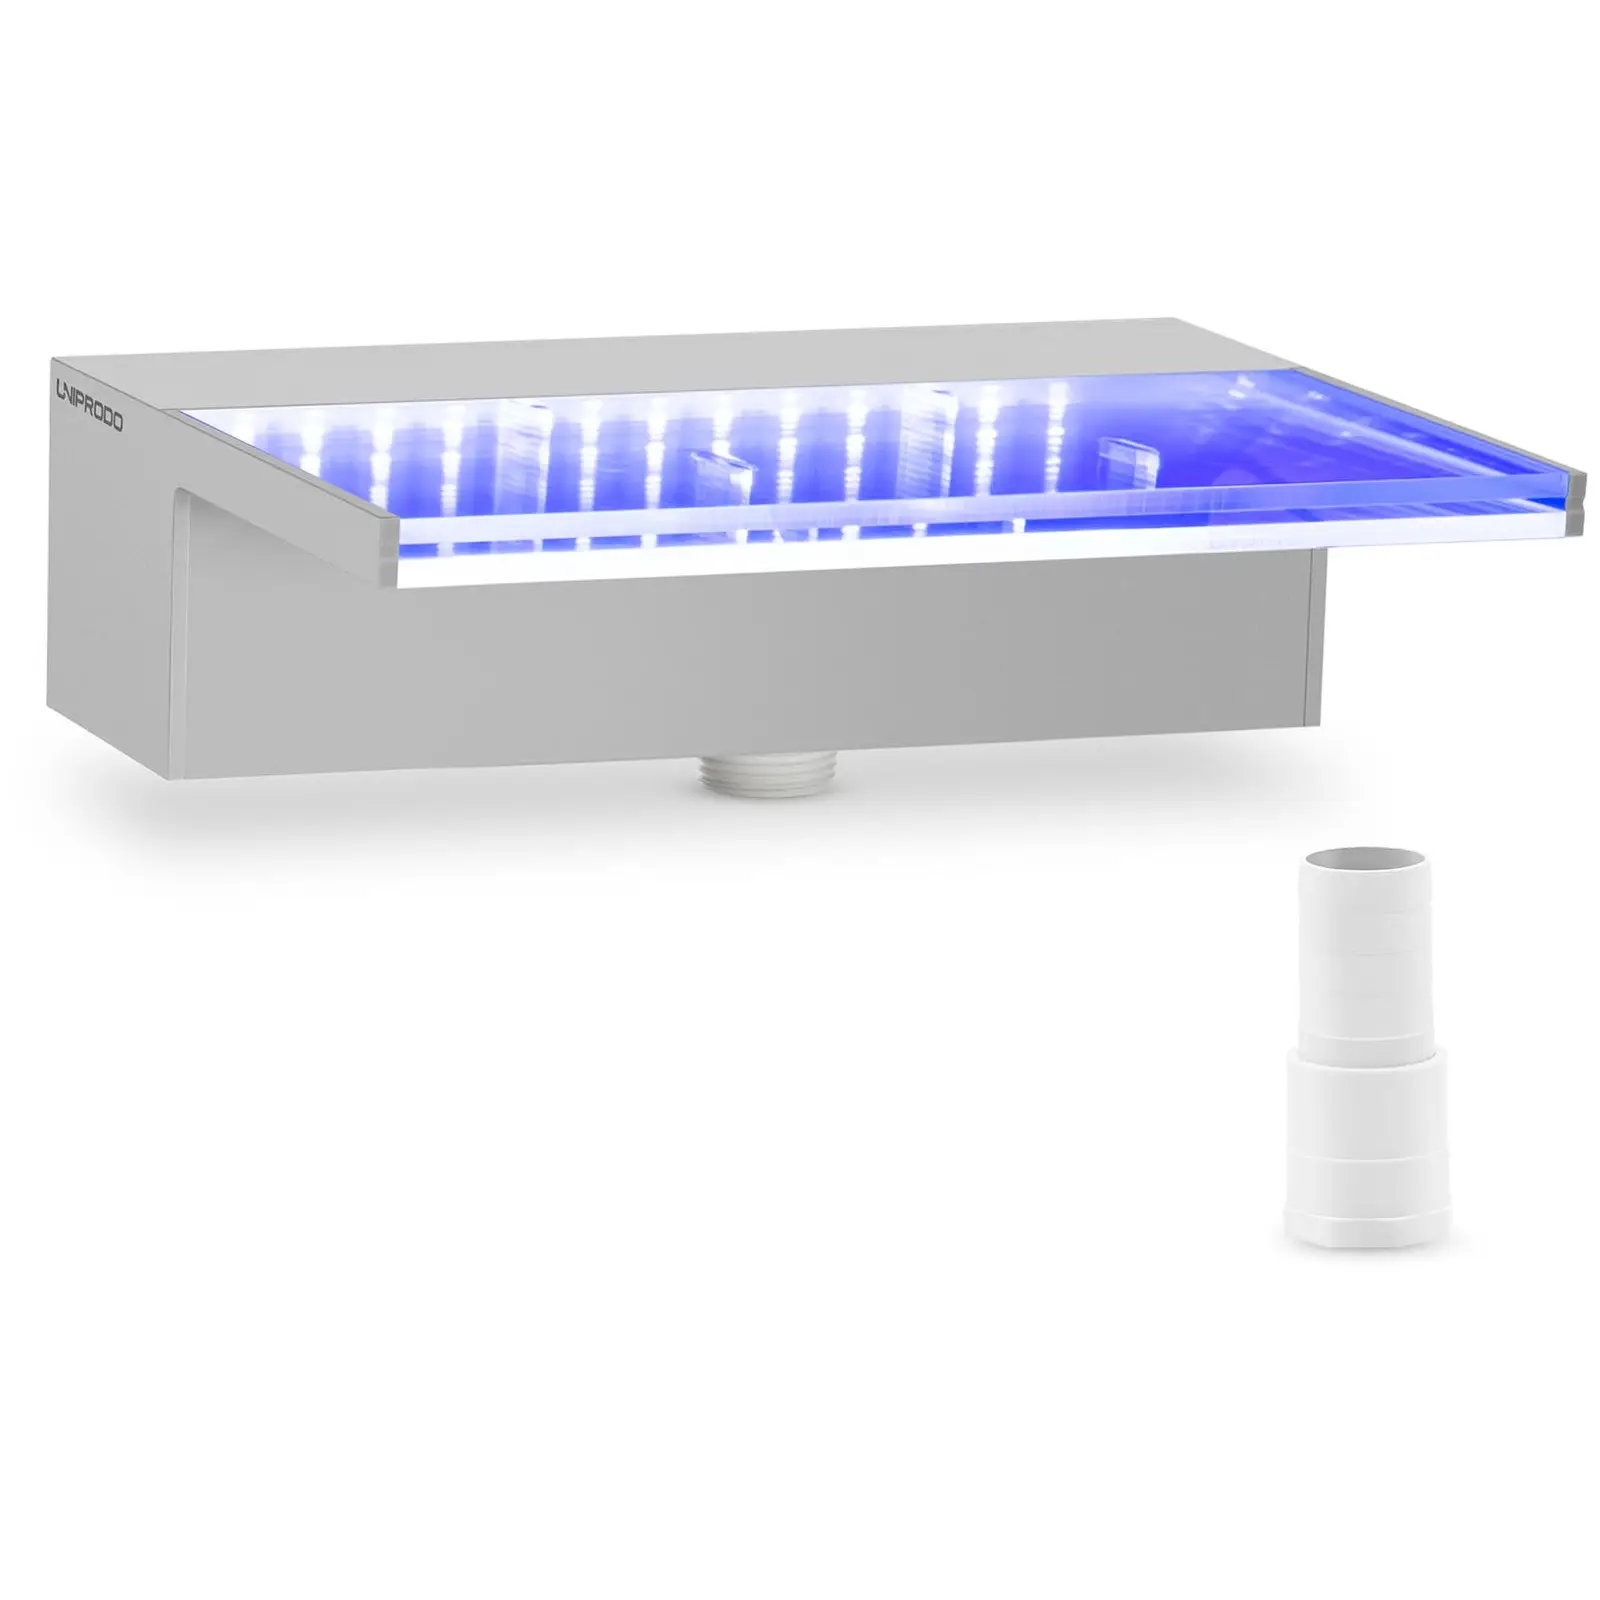 Duș de supratensiune - {{net_length}} cm - Iluminare cu LED-uri - Albastru / Alb - {{Lip_lenght}} mm ieșire de apă